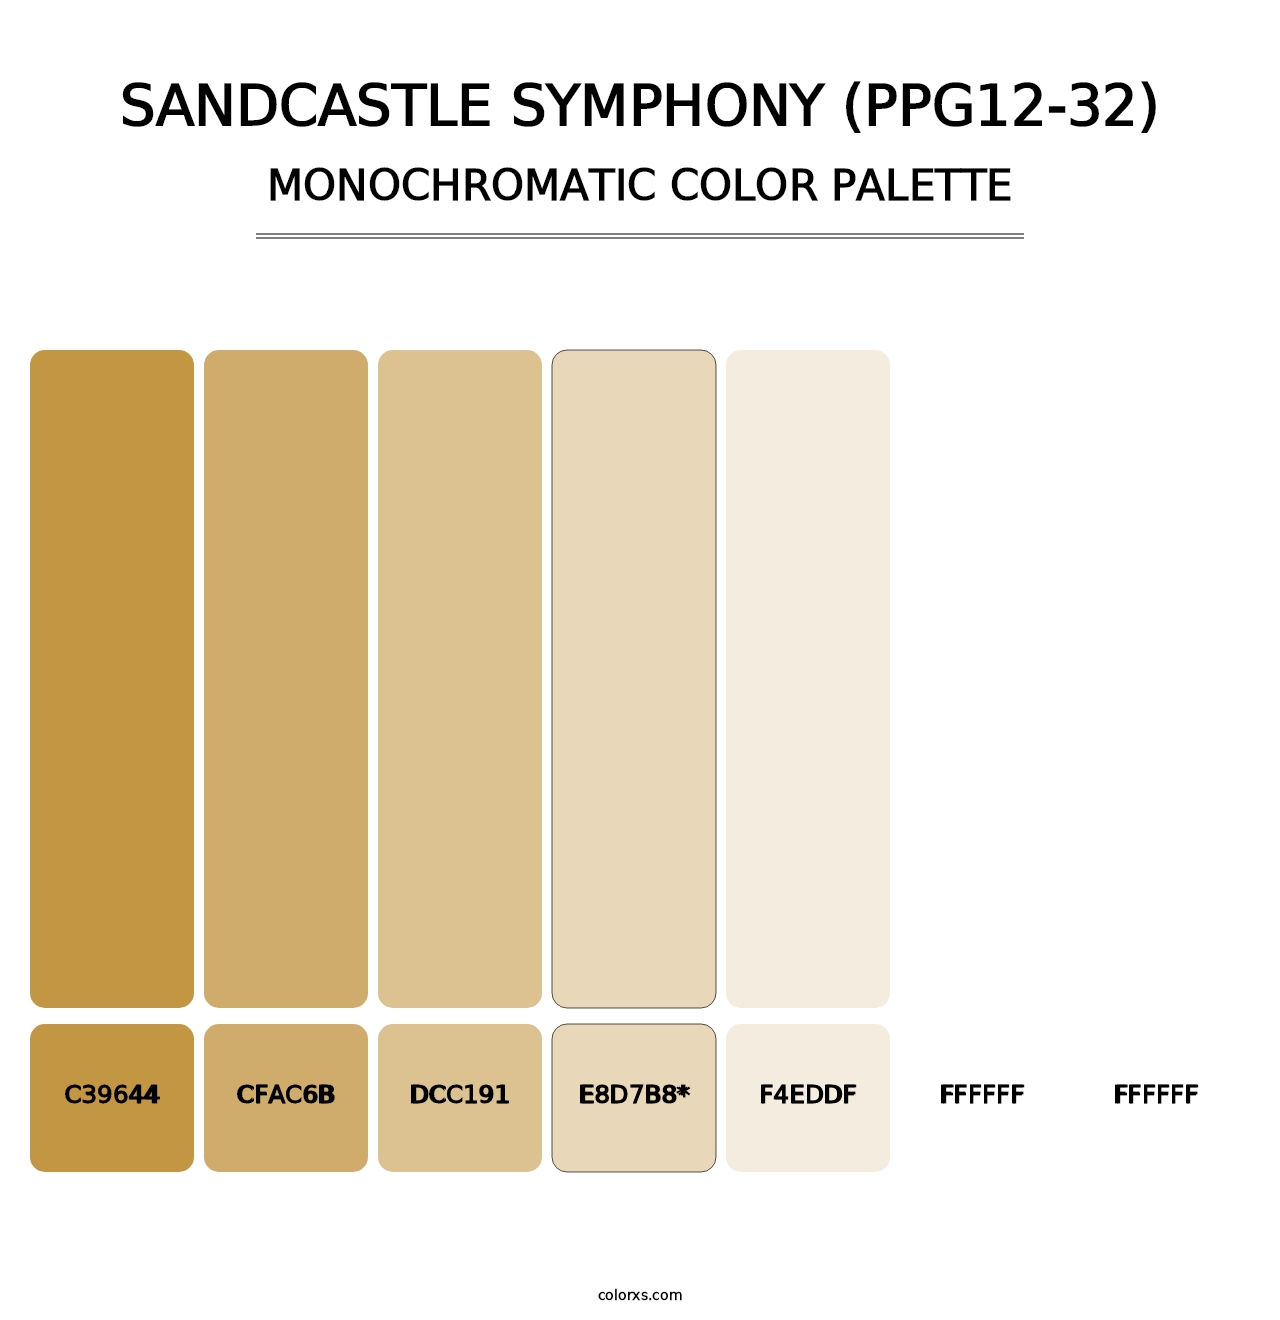 Sandcastle Symphony (PPG12-32) - Monochromatic Color Palette